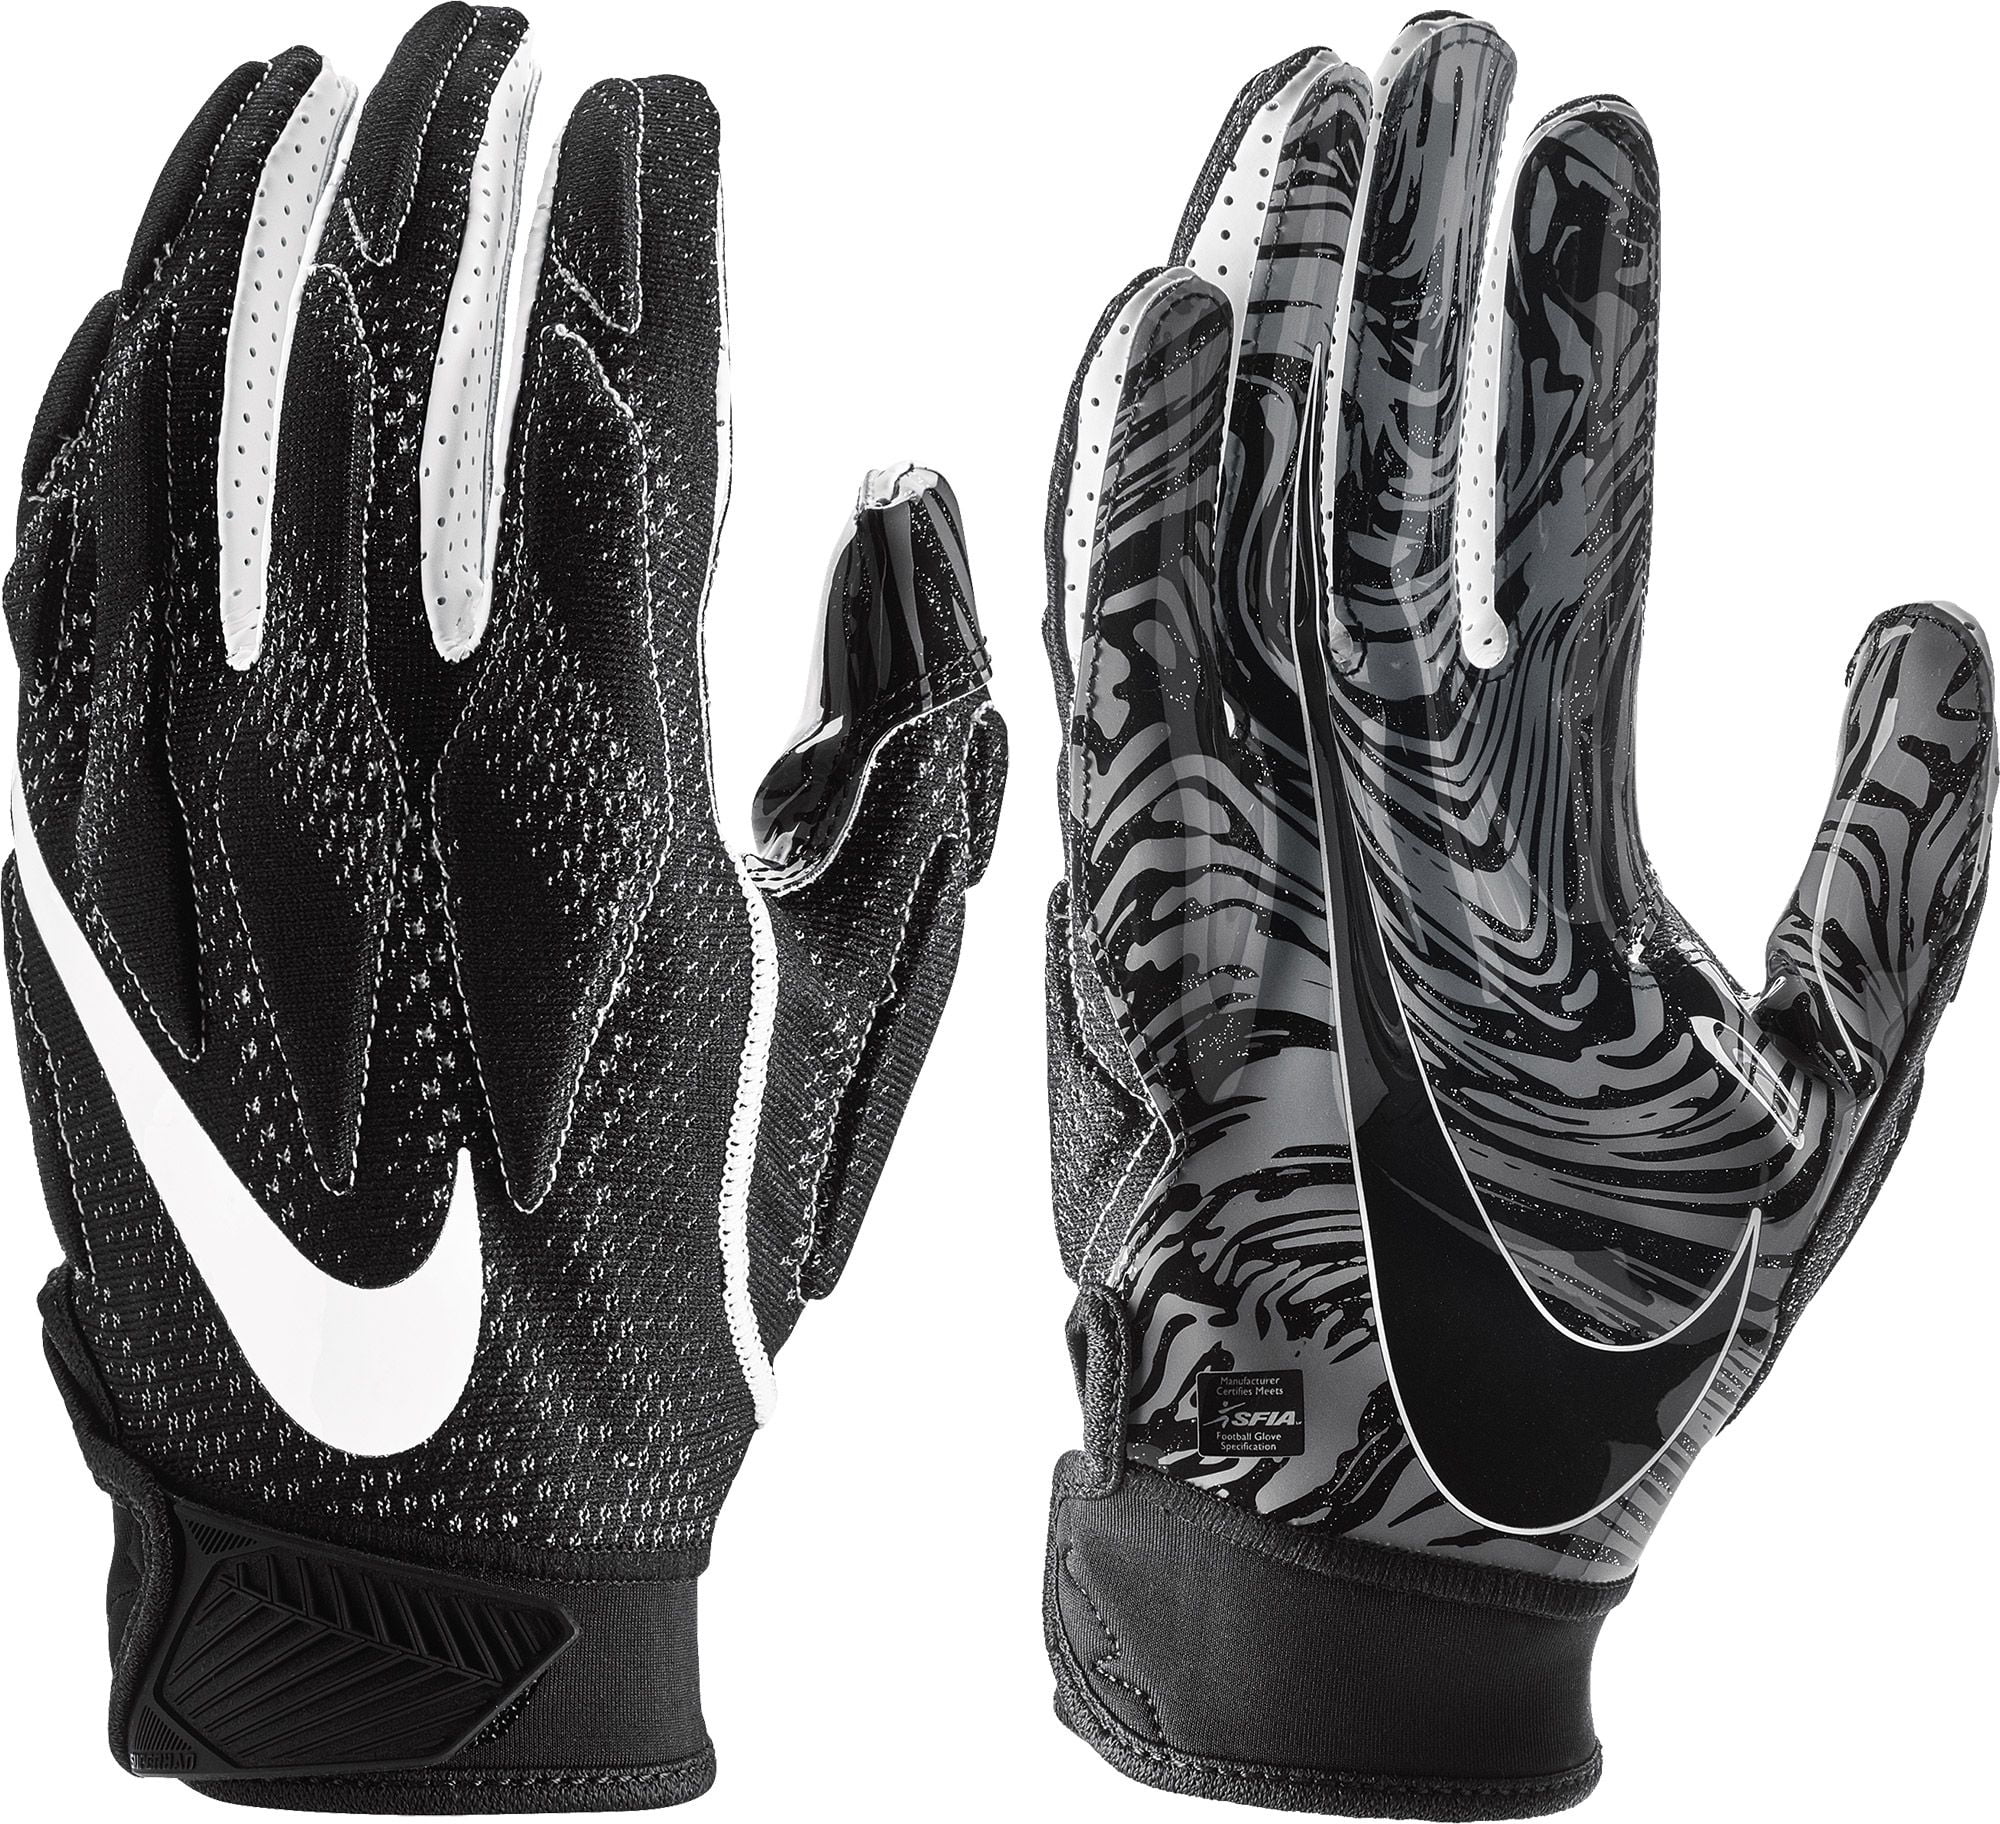 Nike x Heron Preston Superbad 4.5 Football Gloves Black/White